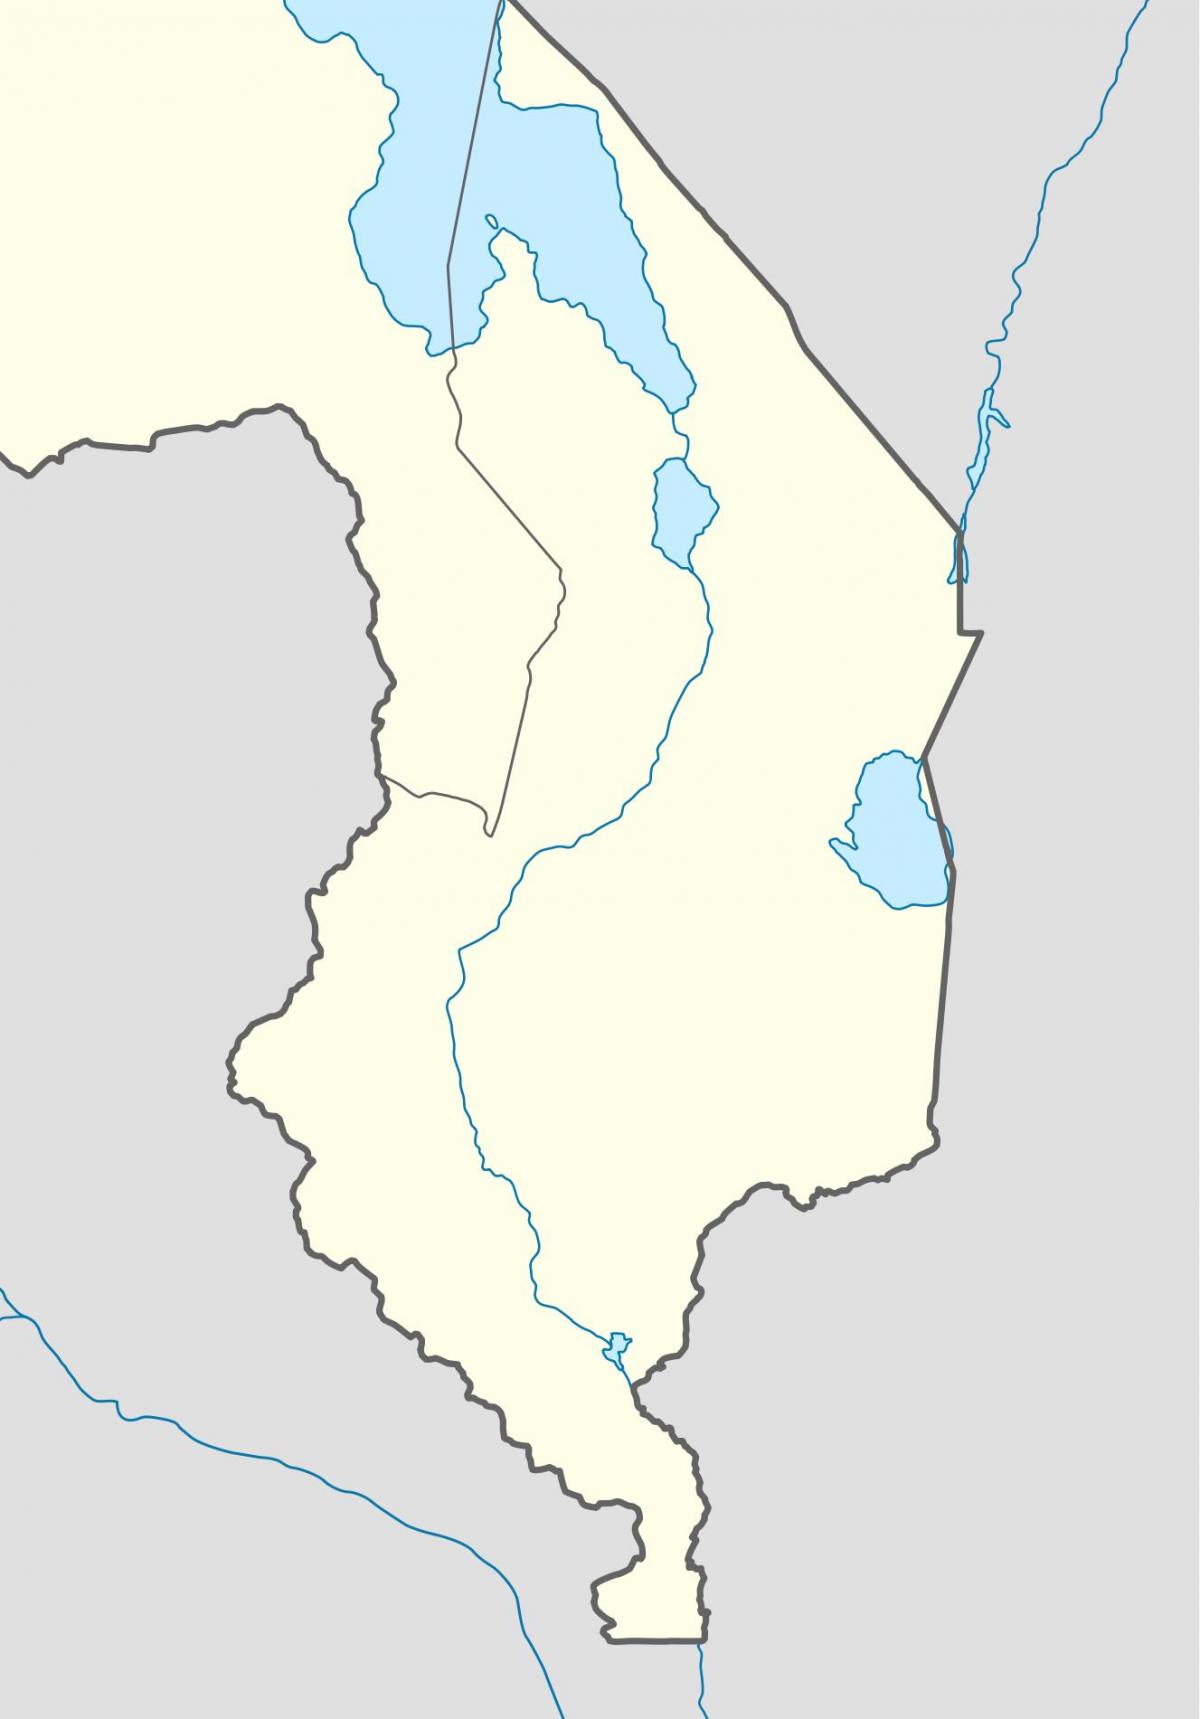 નકશો માલાવી નદી